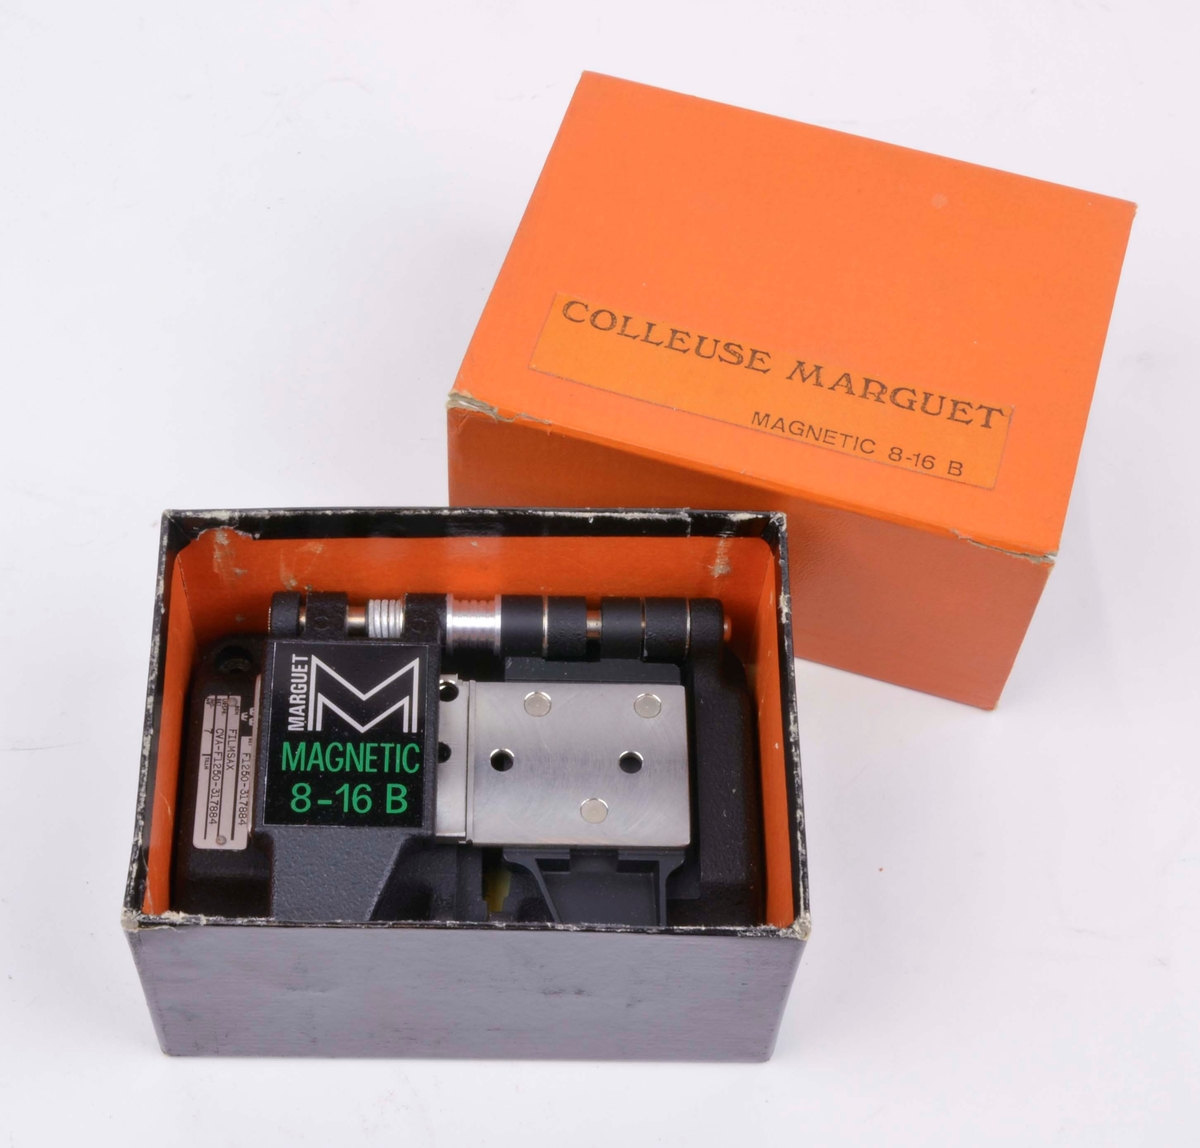 Filmsax av märket Marguet Magnetic 8-16 B. Filmsaxen ligger i sin tillhörande ask som är orange och har inskriften Colleuse Marguet Magnetic 8-16 B.